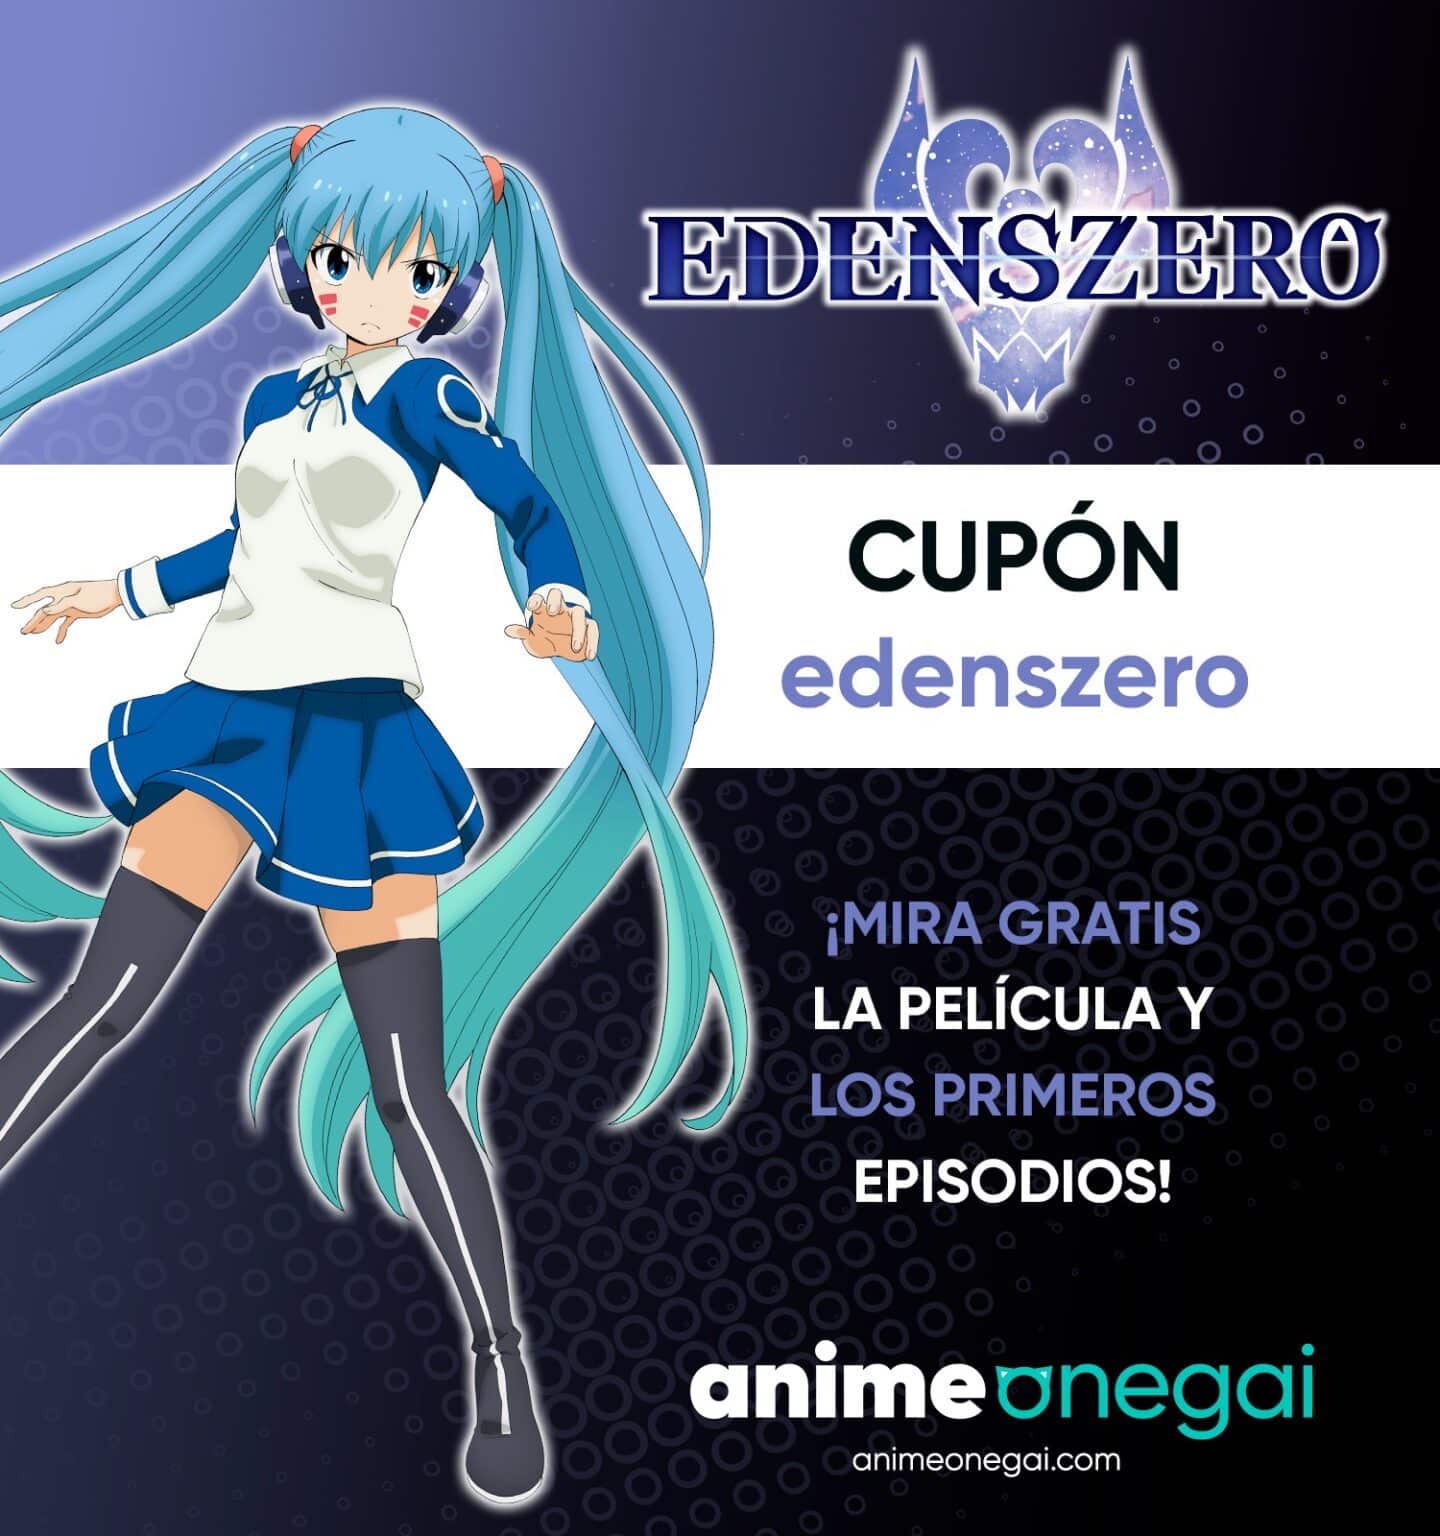 Edens Zero Anime Onegai